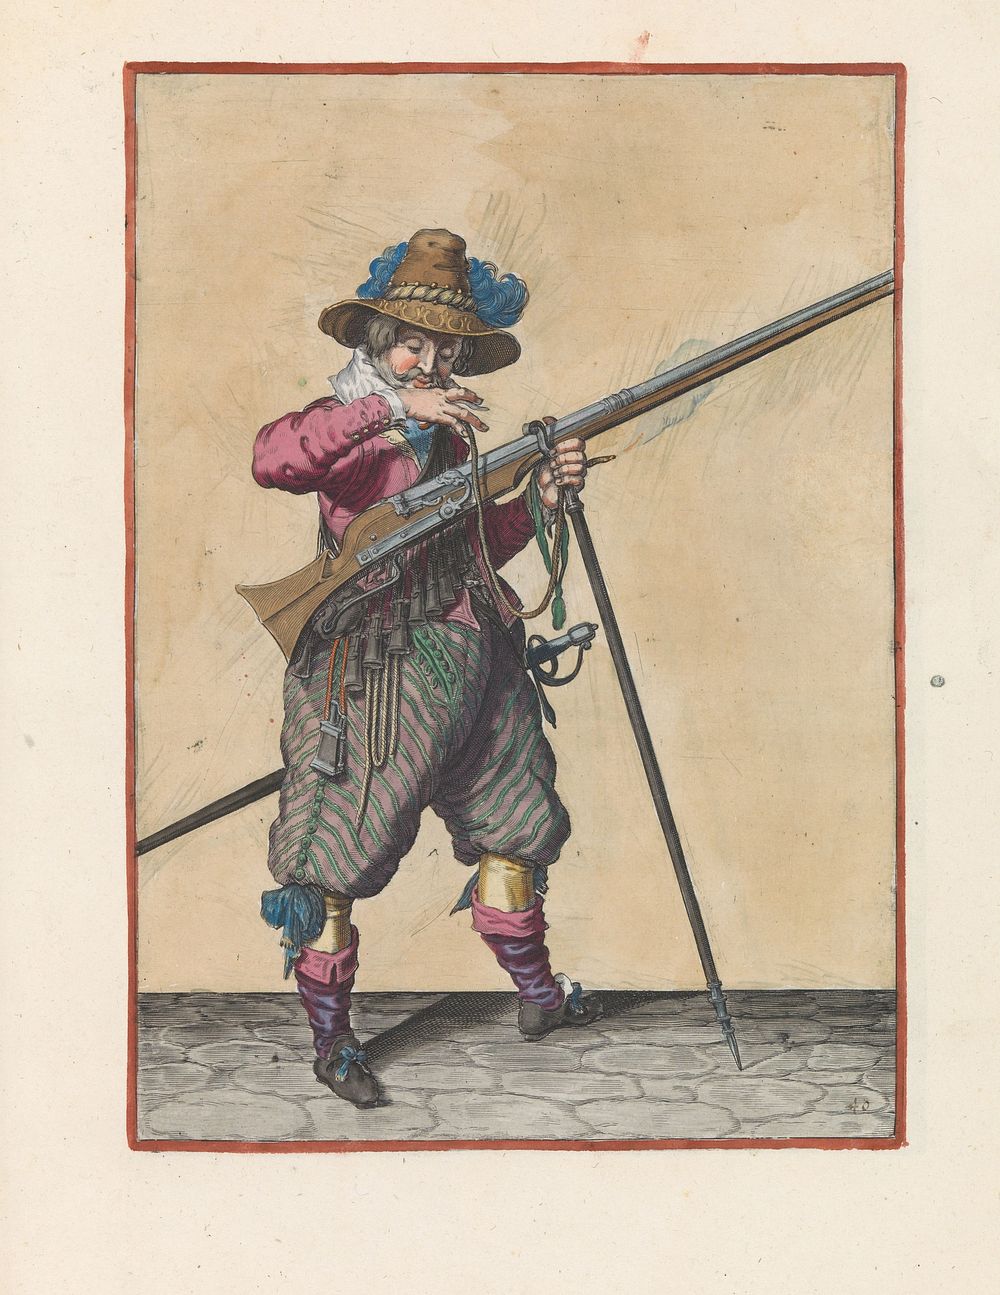 Soldaat op wacht met een musket die zijn lont naar zijn mond brengt om hem schoon te blazen (c. 1597 - 1607) by Jacques de…